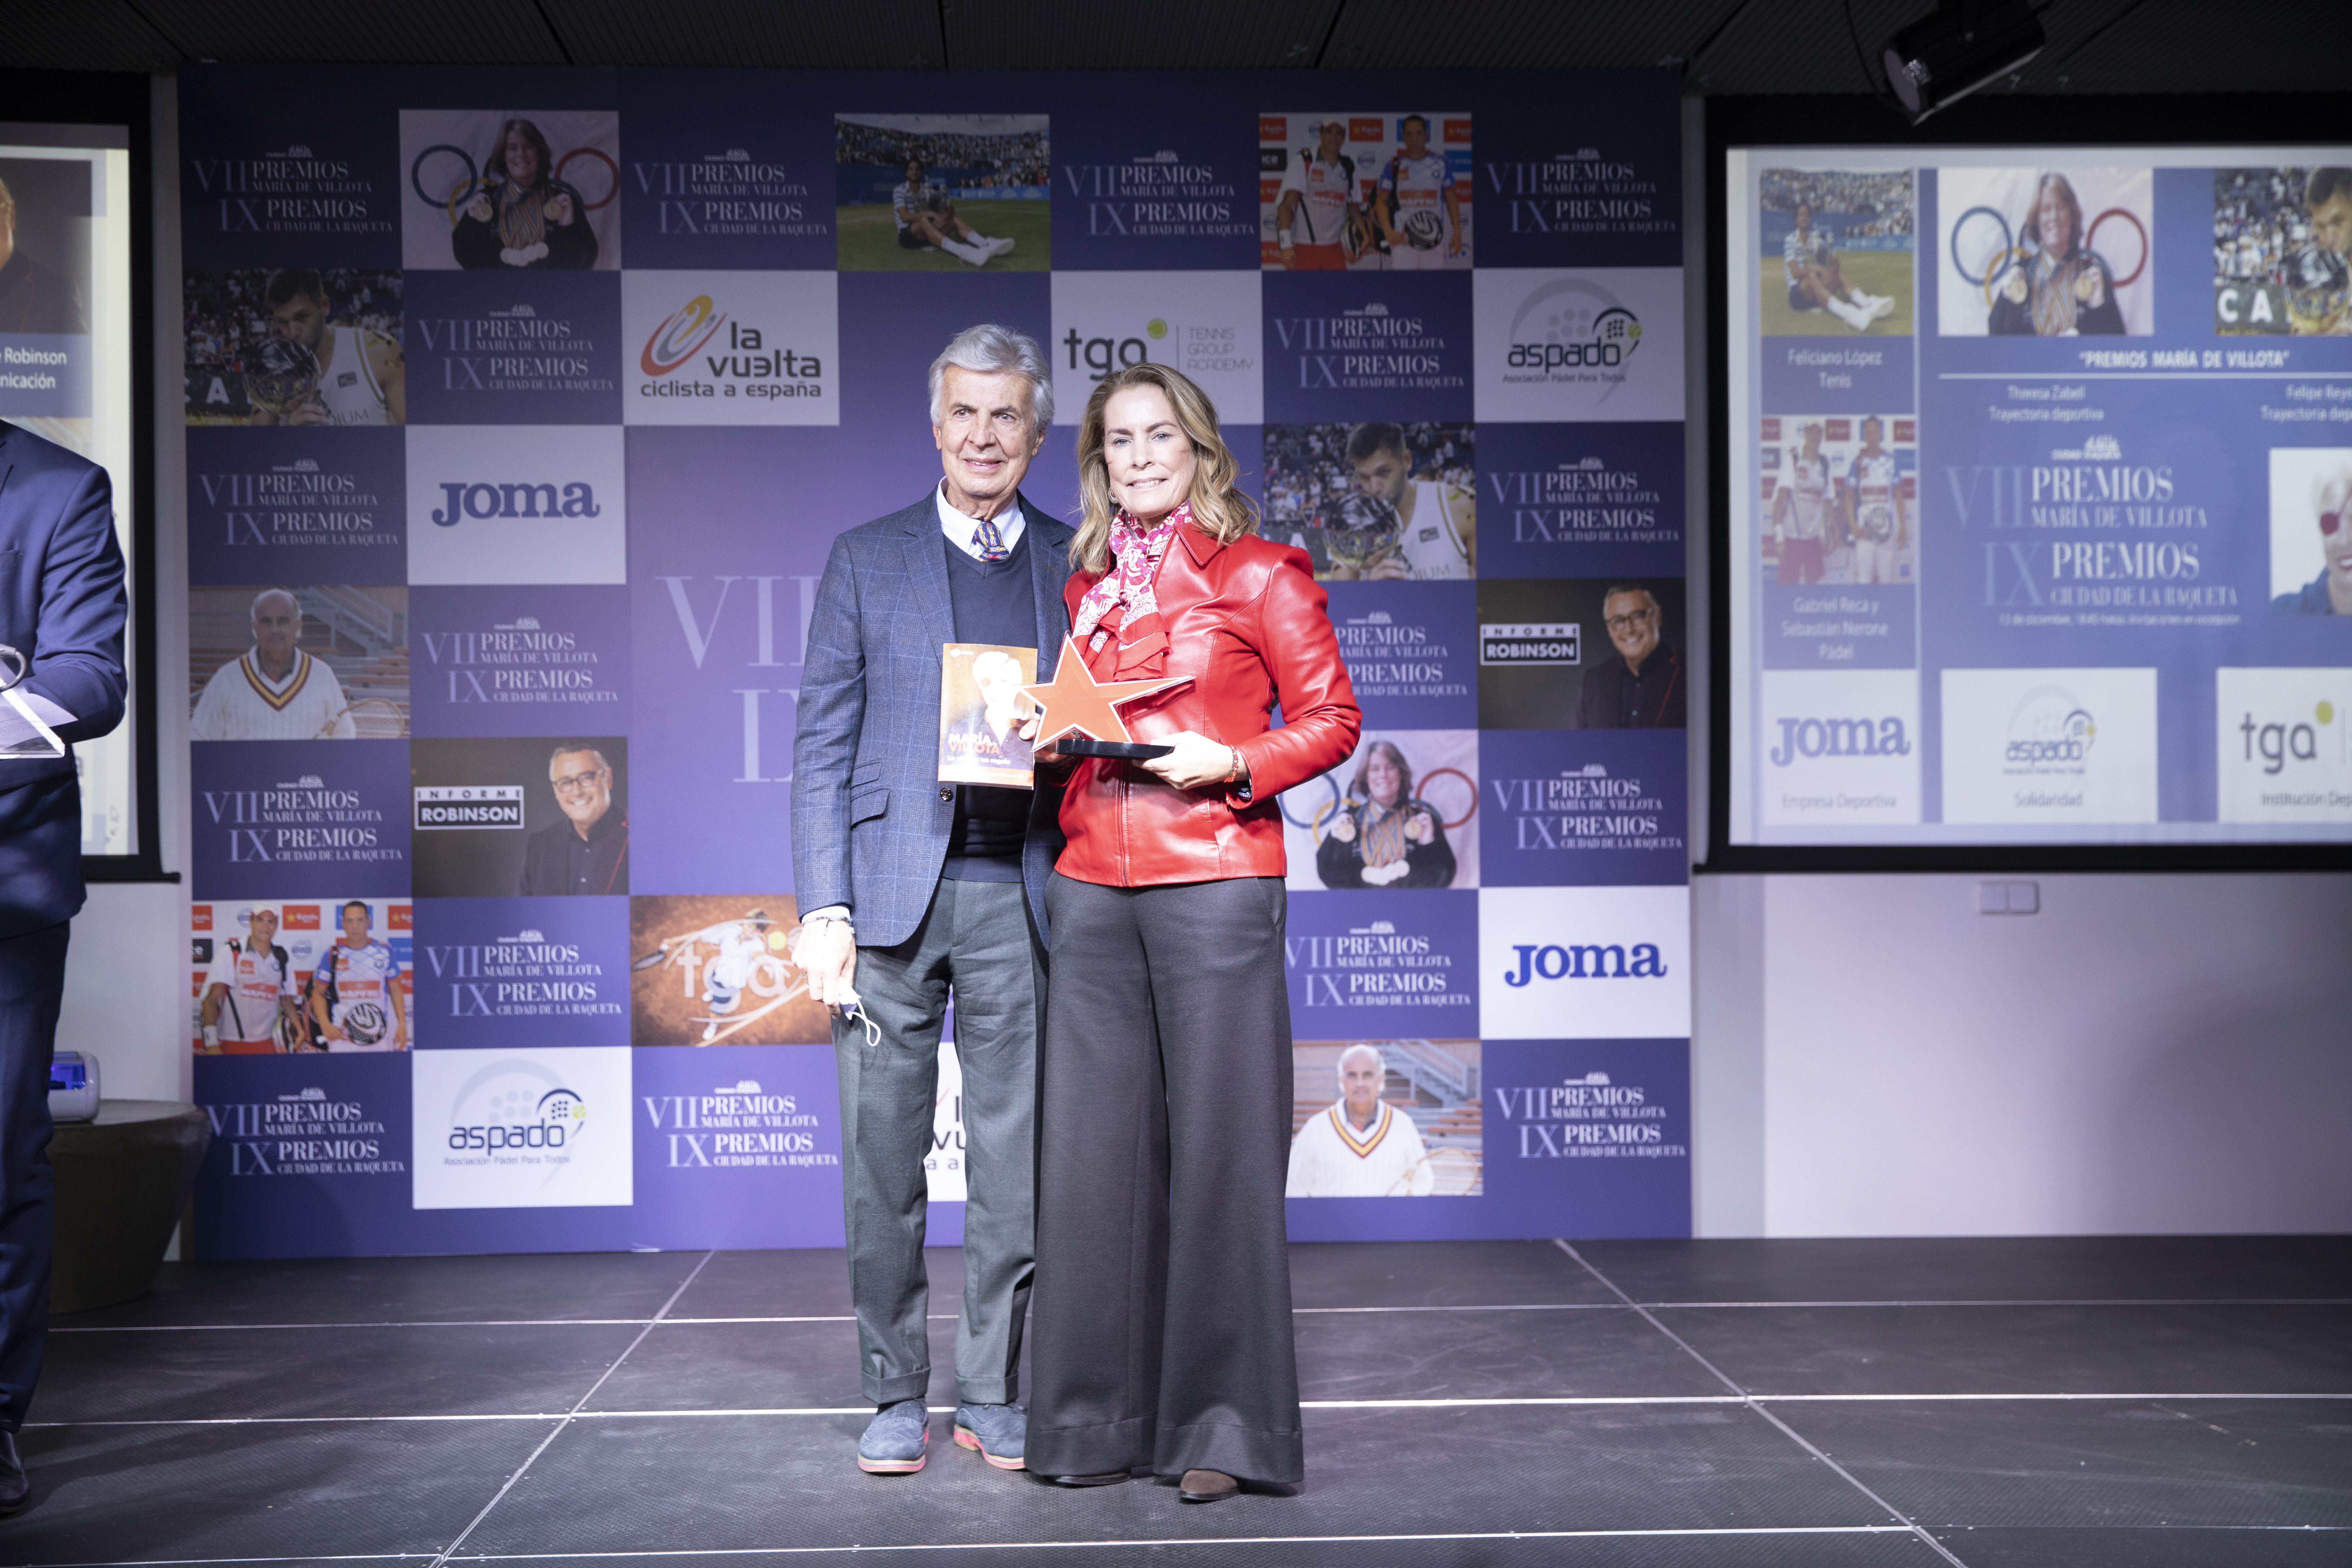 Antonio Zapatero, galardón Especial de los IX Premios Ciudad de la Raqueta